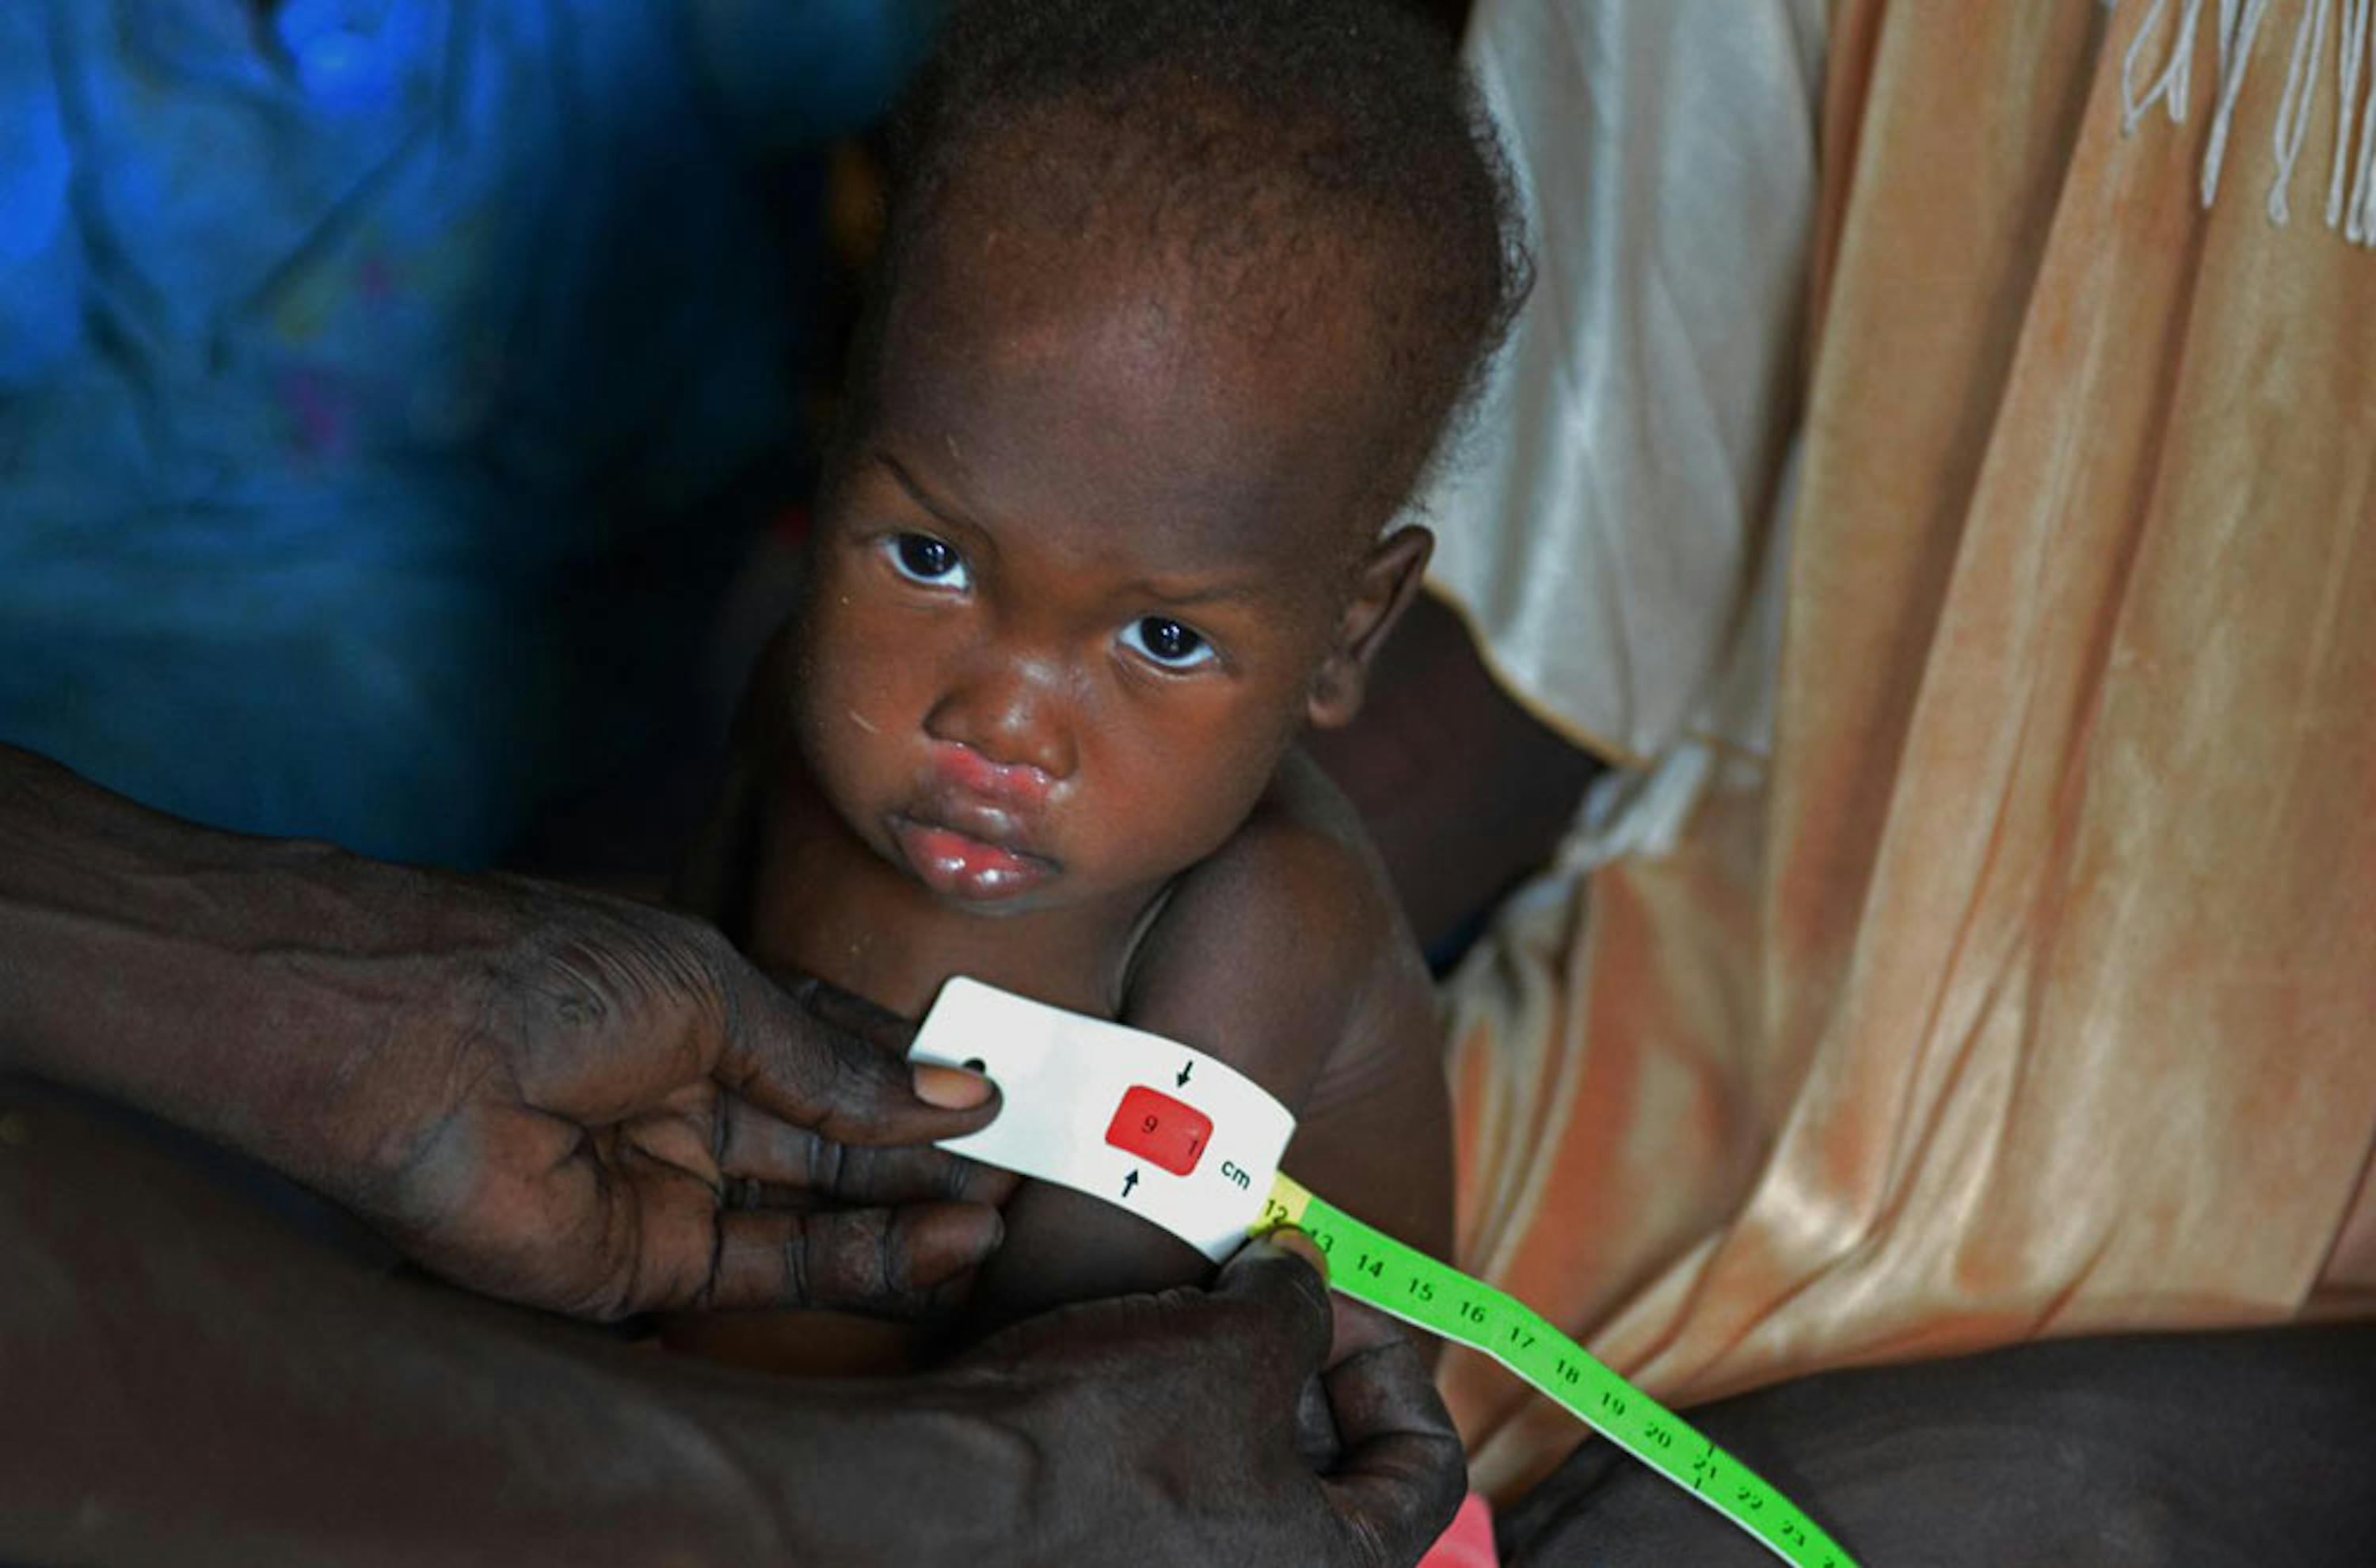 Il colore rosso del braccialetto MUAC rivela che la piccola Nyarony, 3 anni, è affetta da malnutrizione grave. La famiglia di Nyarony è sfollata in un accampamento presso la base ONU di Malakal, nel Sud Sudan - ©UNICEF/NYHQ2014-1415/Nesbitt